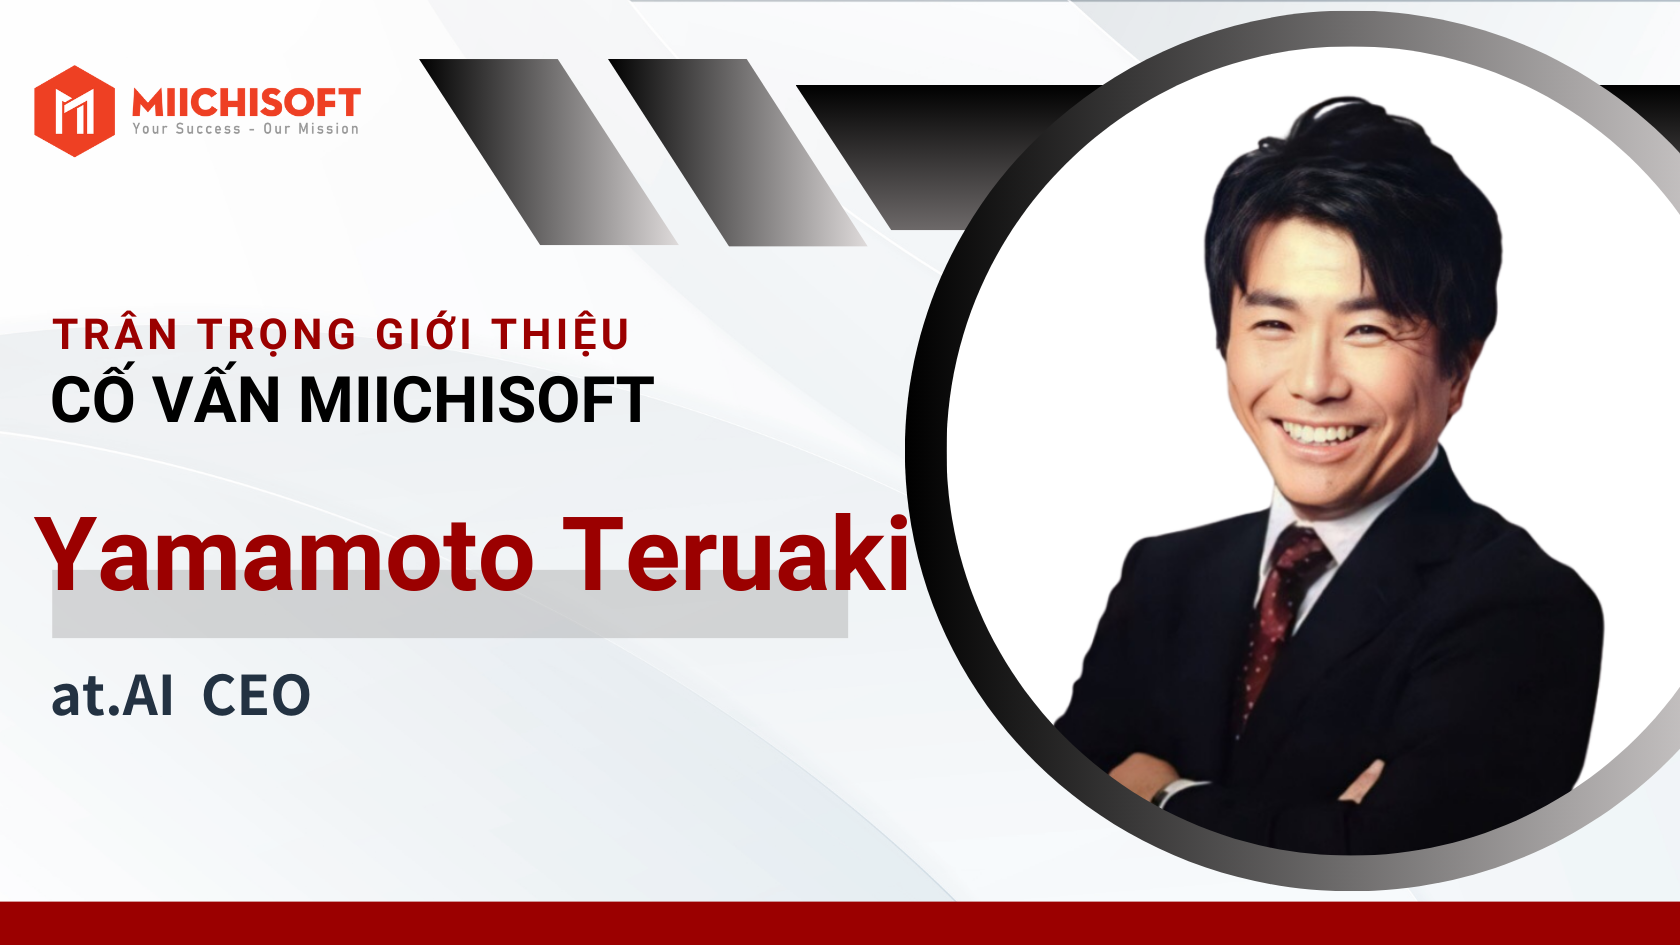 Giới thiệu cố vấn | Thông báo bổ nhiệm ông Yamamoto Teruaki làm cố vấn công nghệ của Miichisoft!